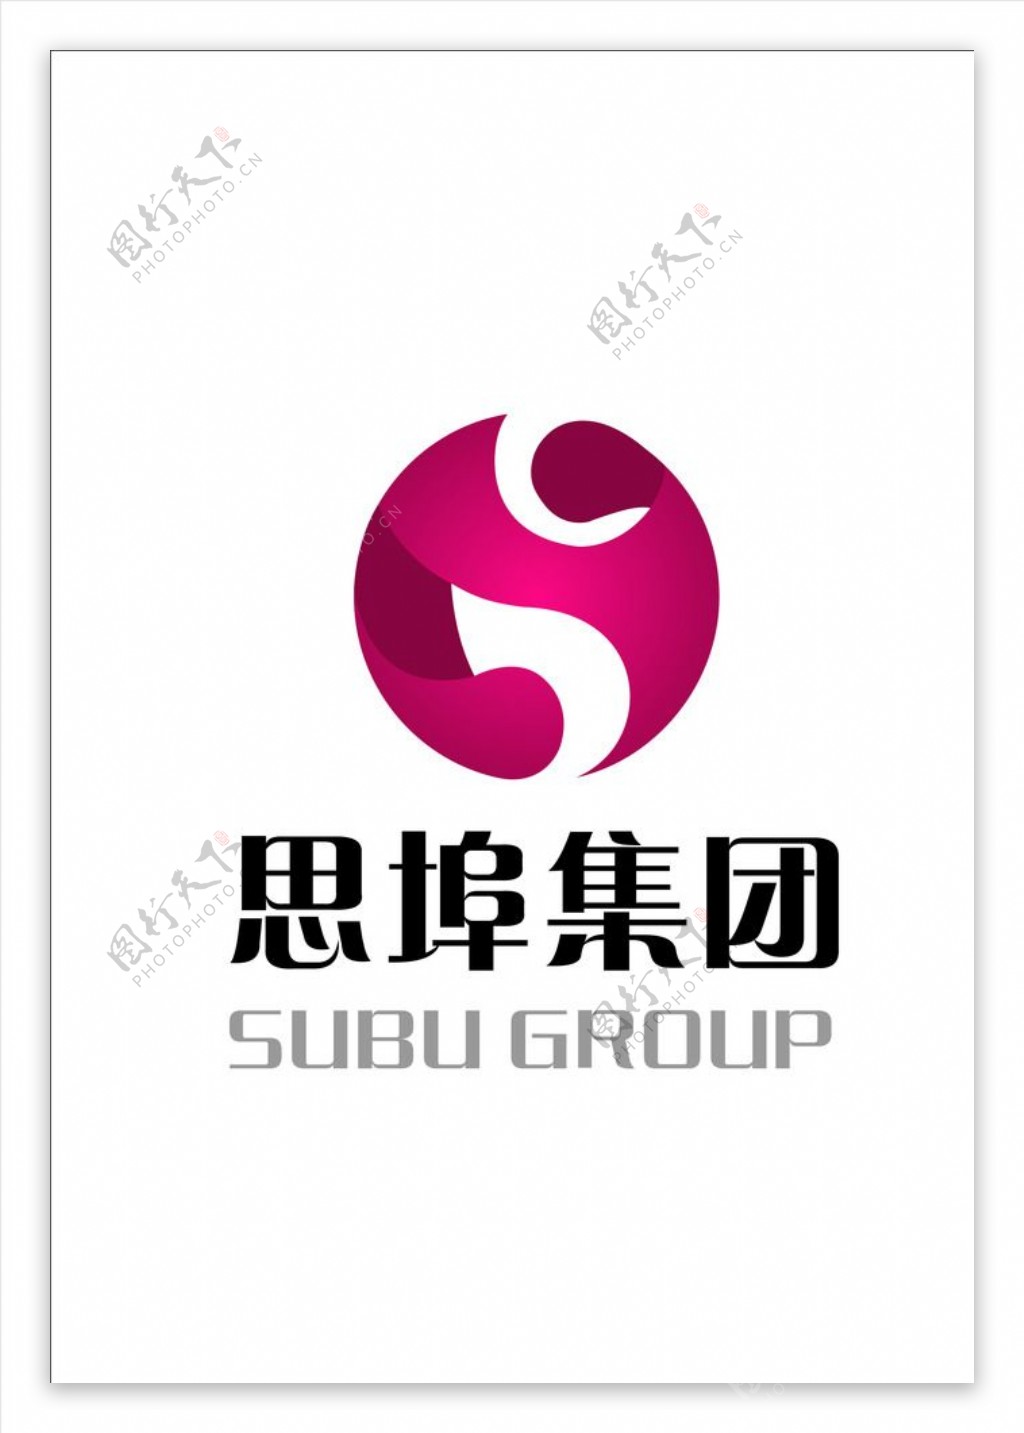 思埠集团logo